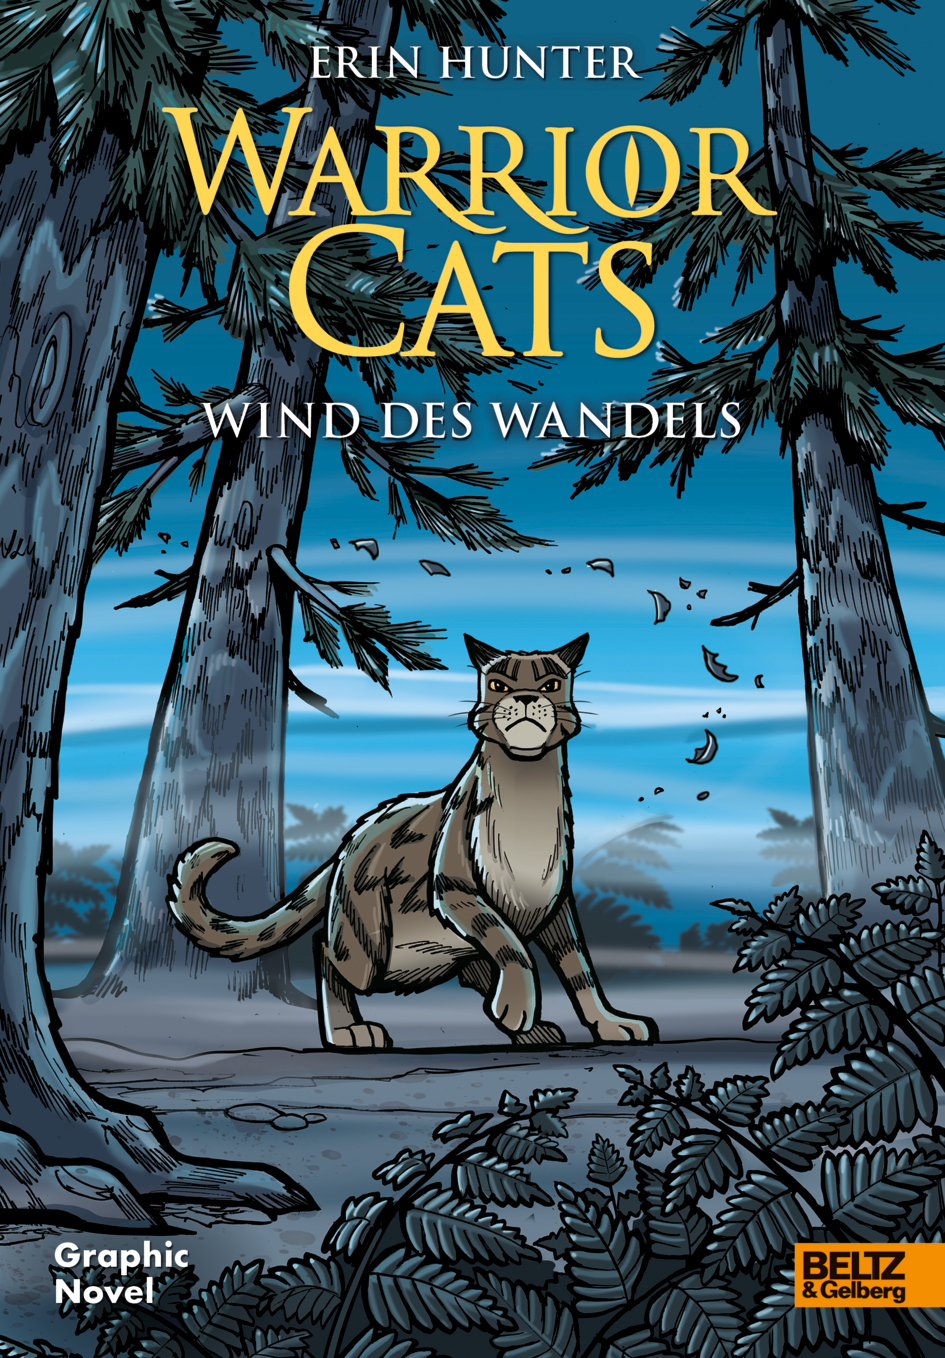 Warrior Cats - Der Dieb des DonnerClans